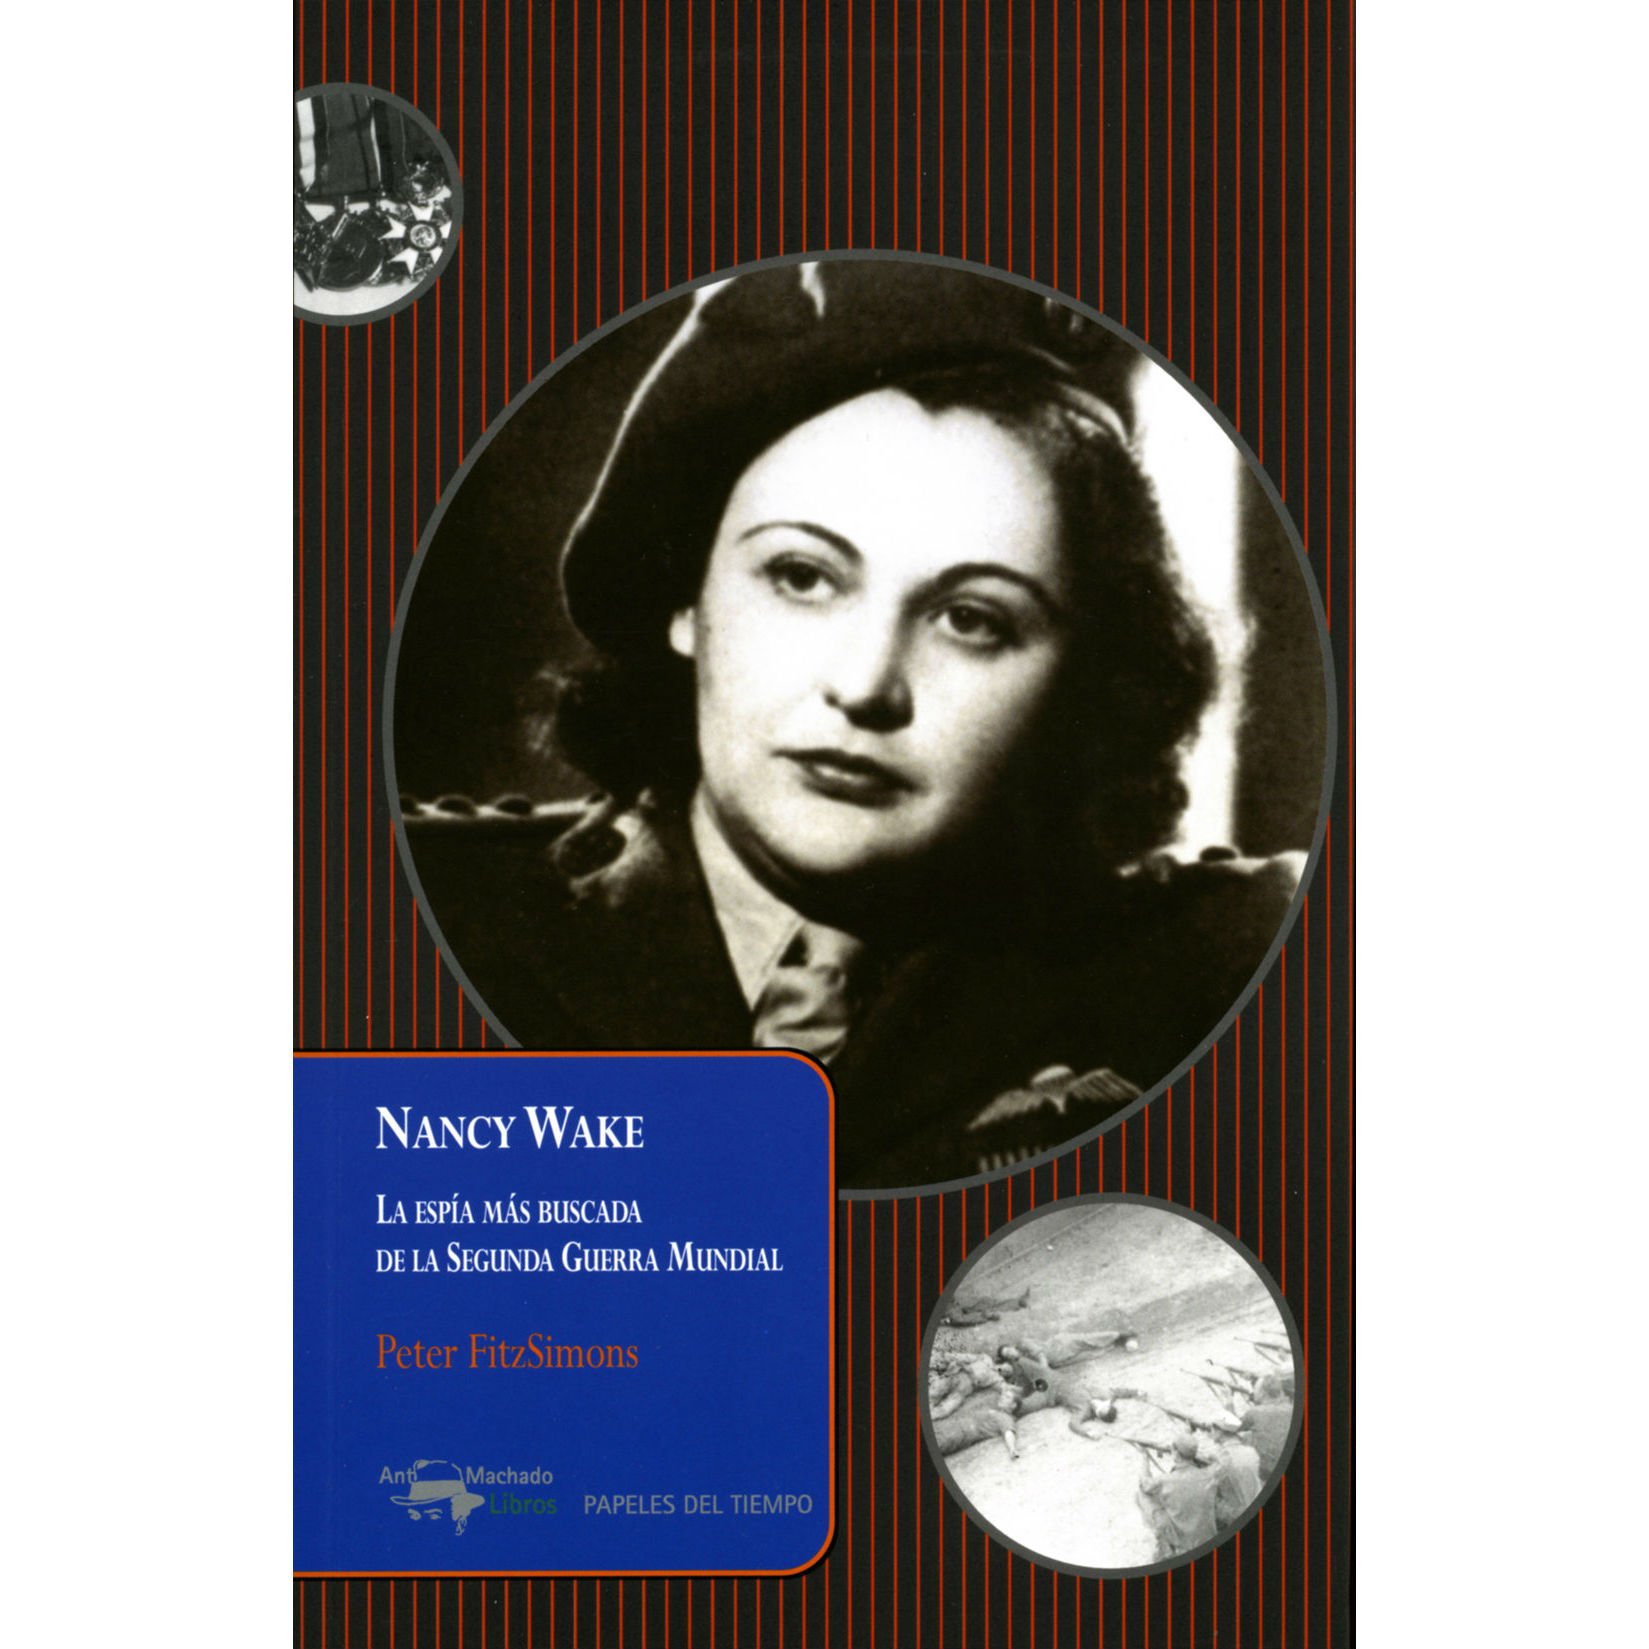 Portada del llibre 'Nancy wake', de Peter FitzSimons